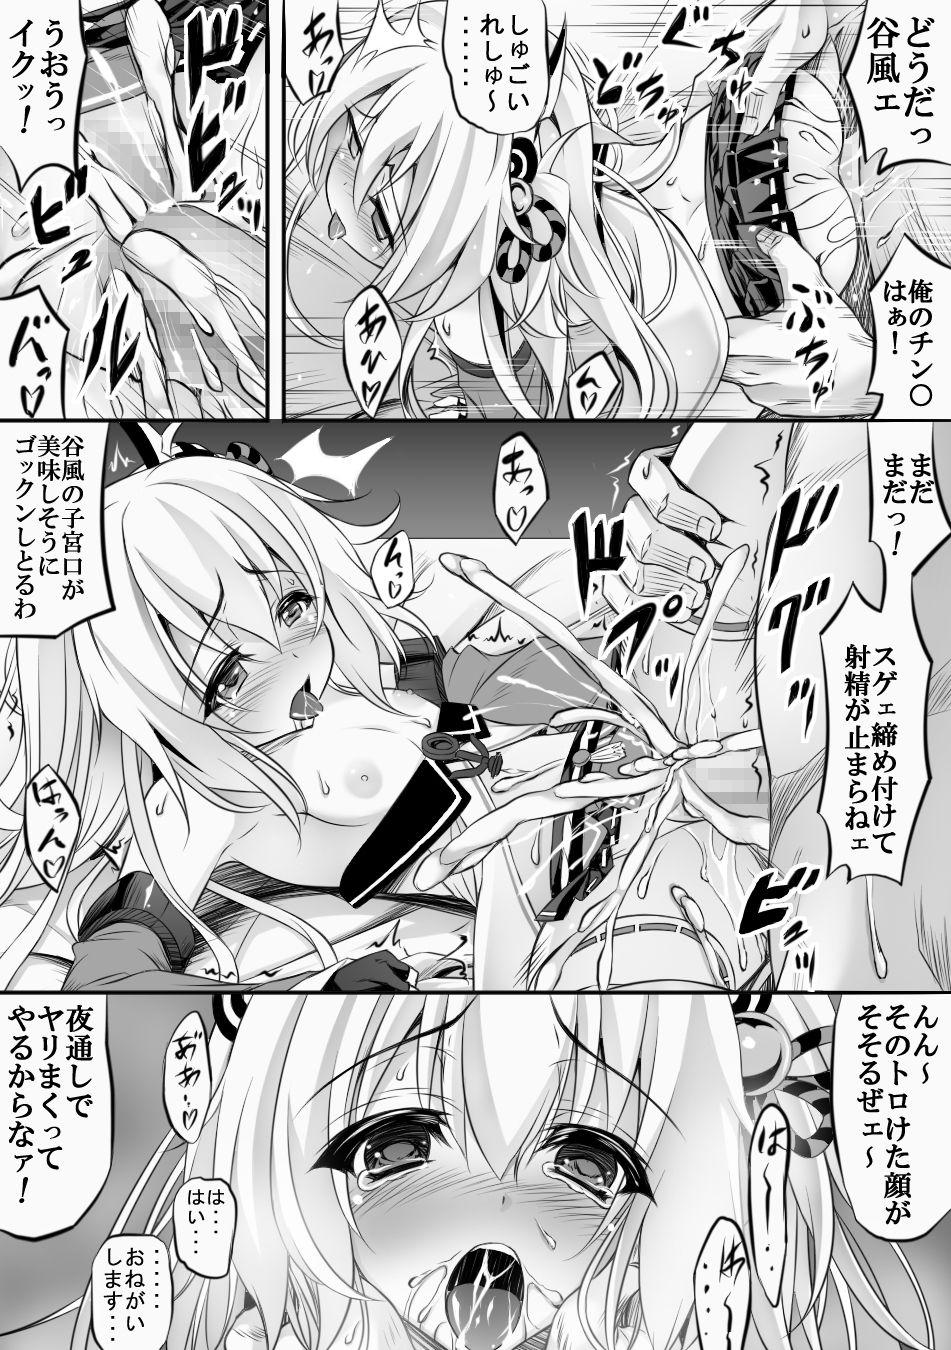 Hot Mom AzuLan 1 Page Manga - Azur lane Massive - Page 2